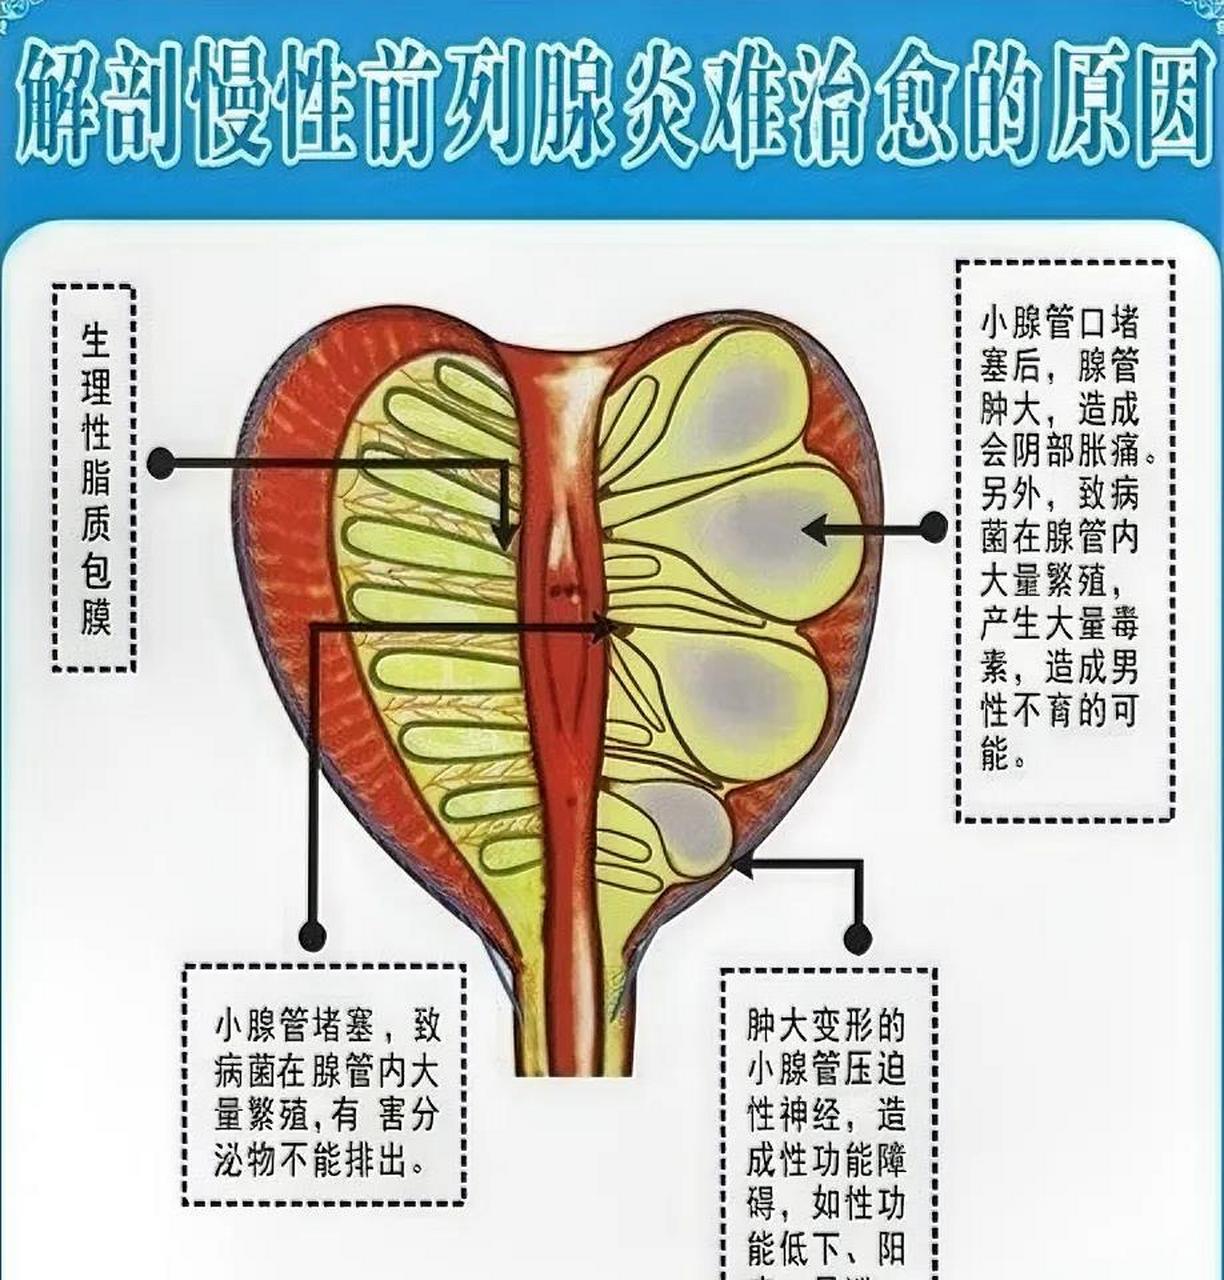 从解剖结构上看,小腺管口堵塞后,腺管肿大,压迫神经,造成会阴部胀痛不